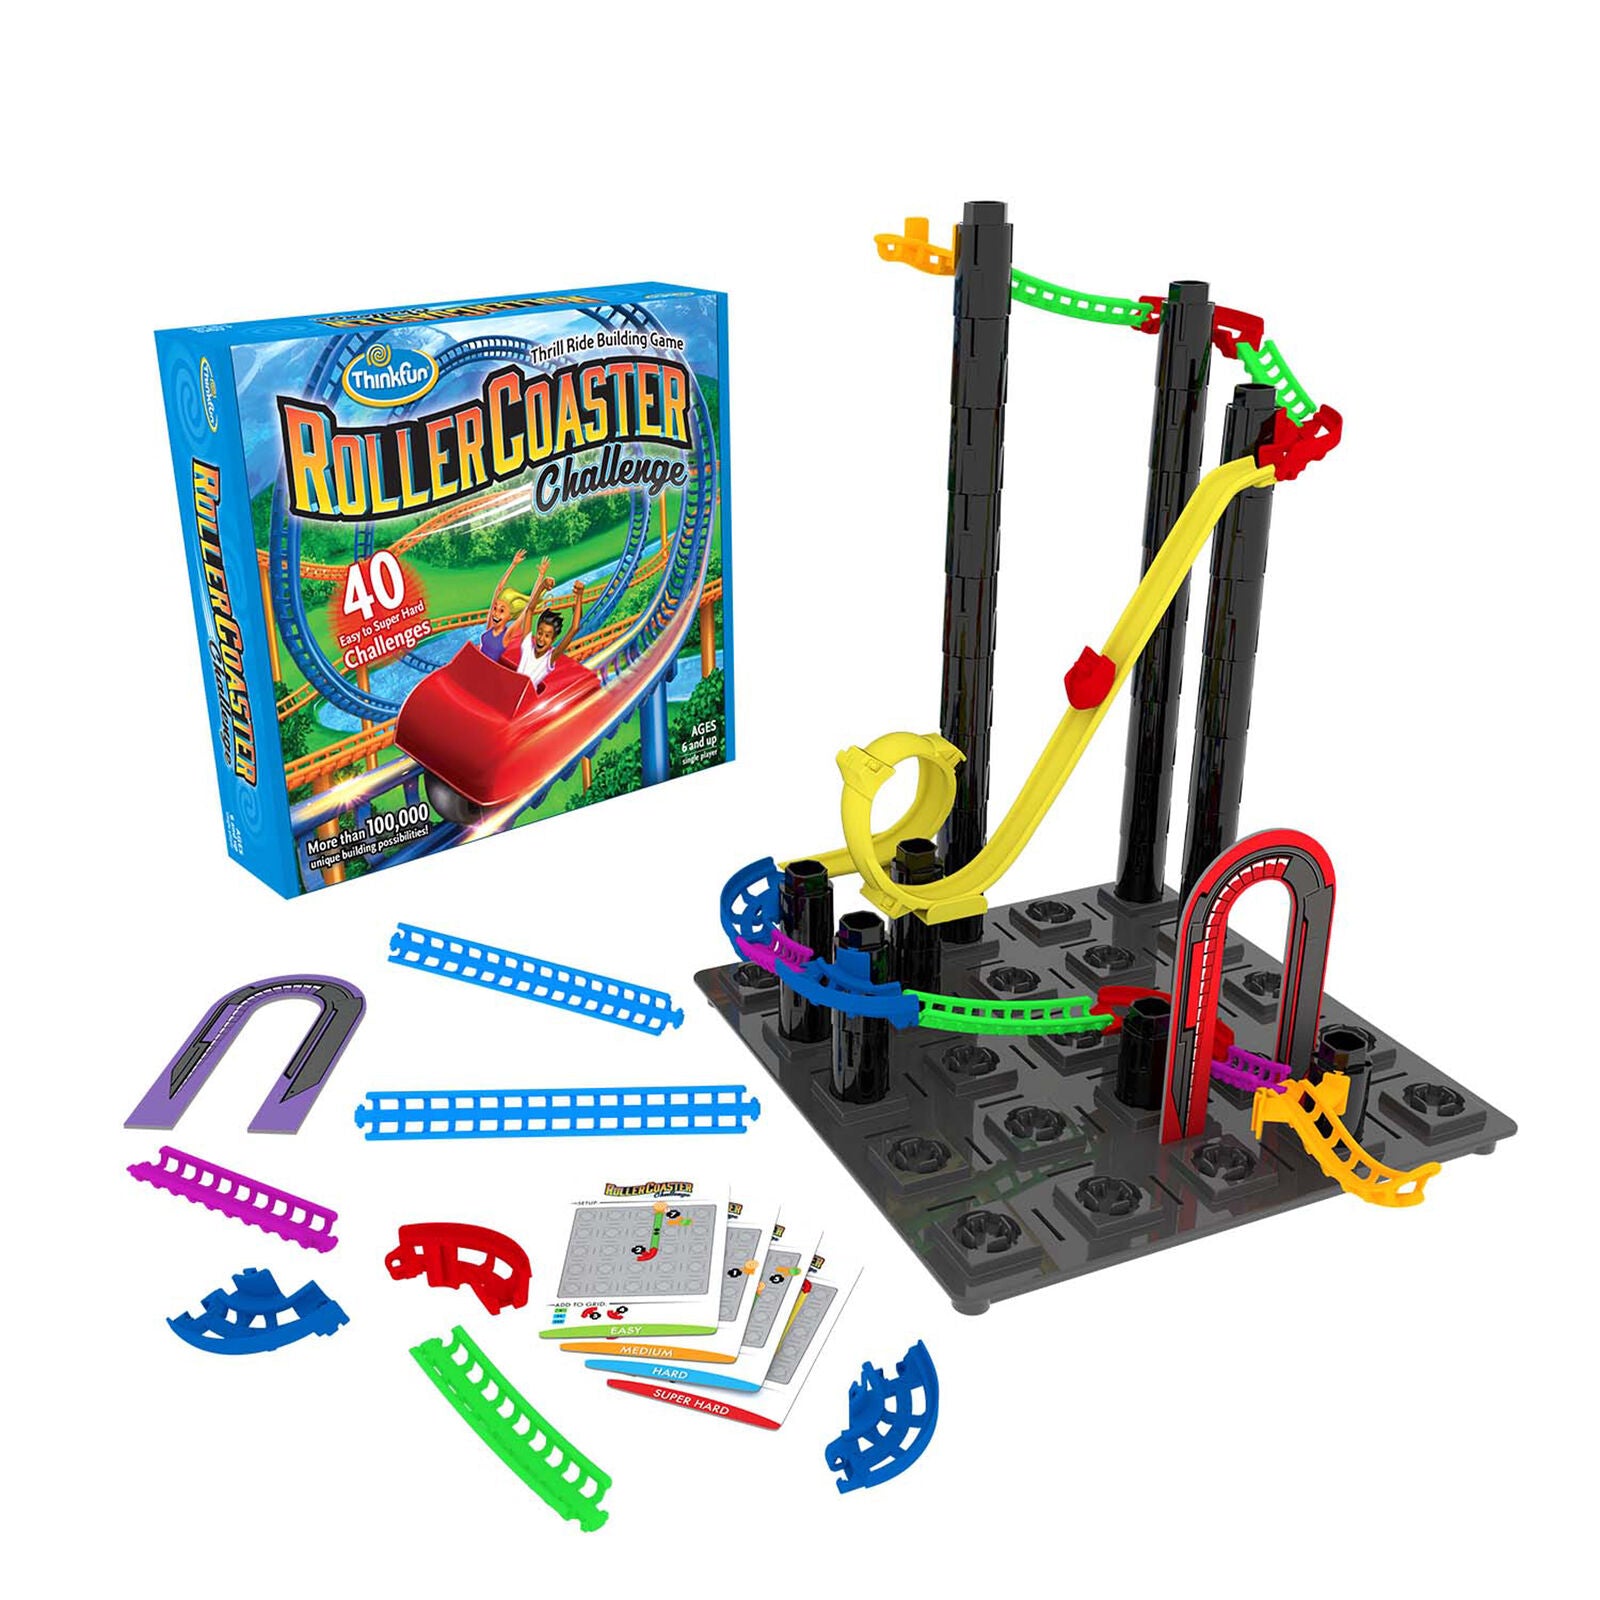 44001046 Ravensburger Roller Coaster Challenge Childrens Learning Games Age 5+